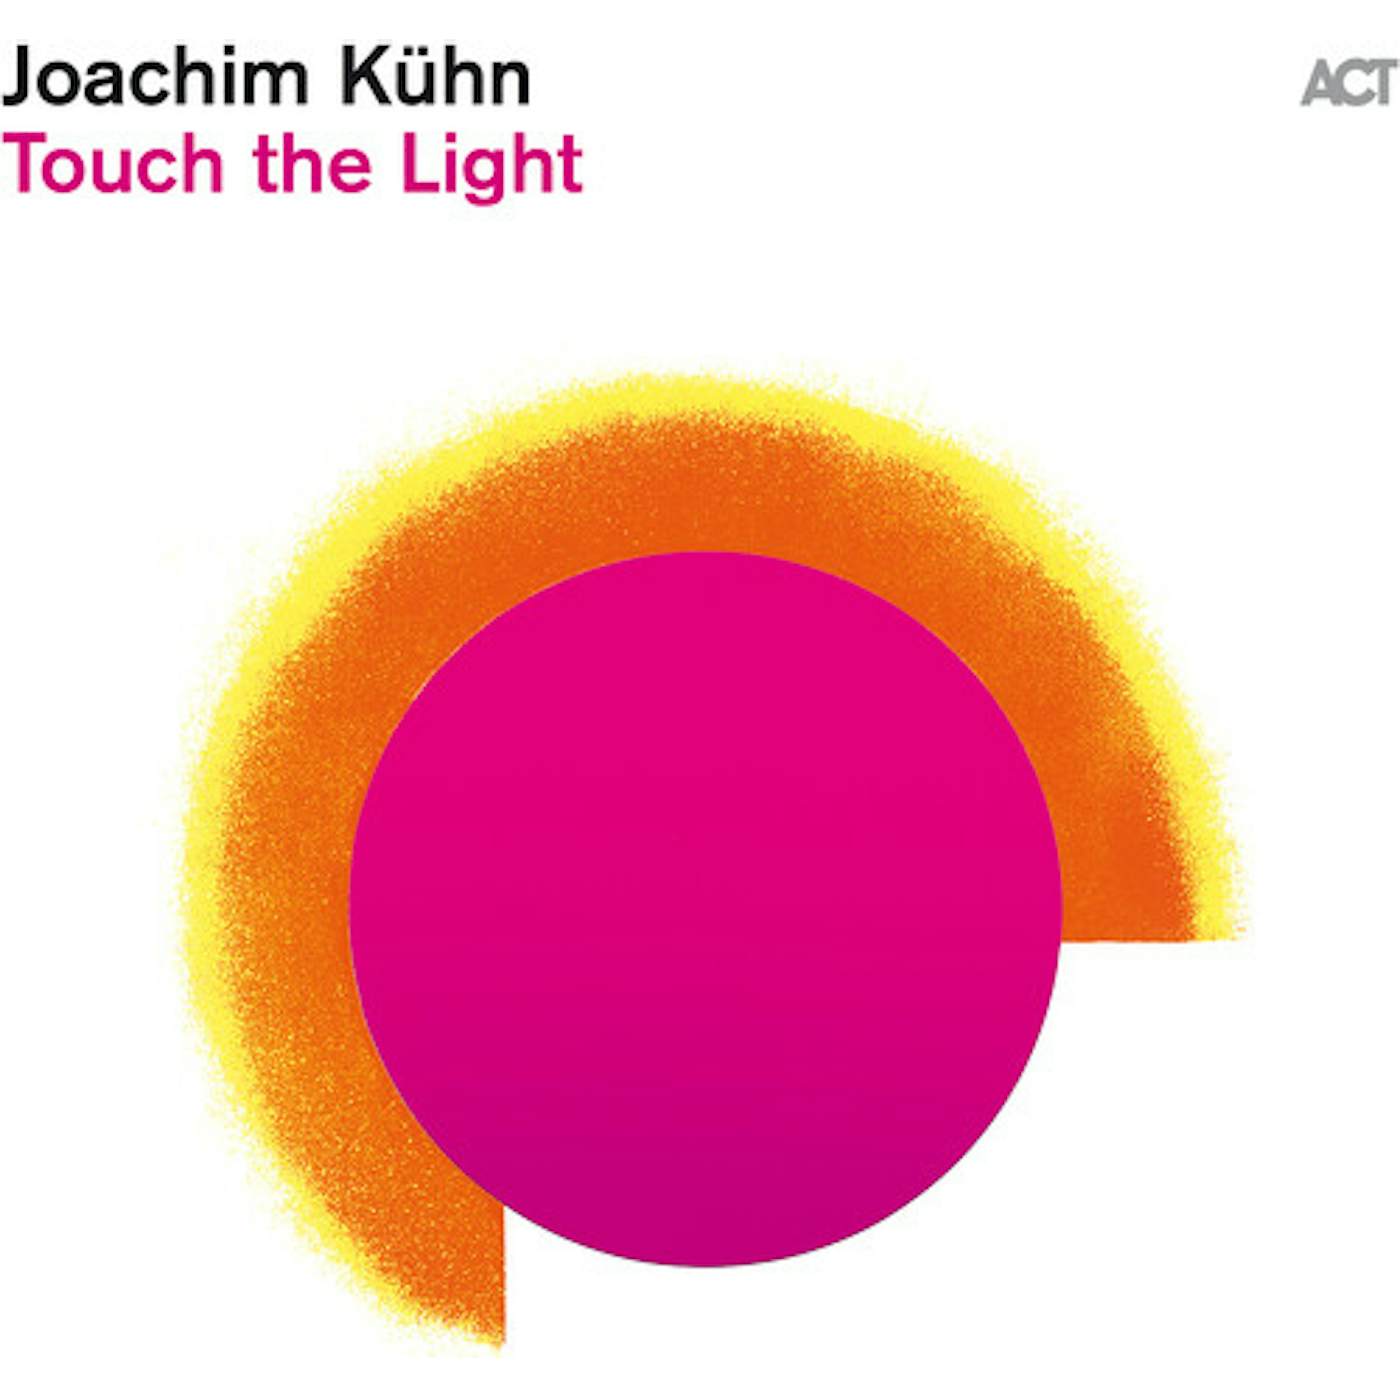 Joachim Kuhn TOUCH THE LIGHT CD